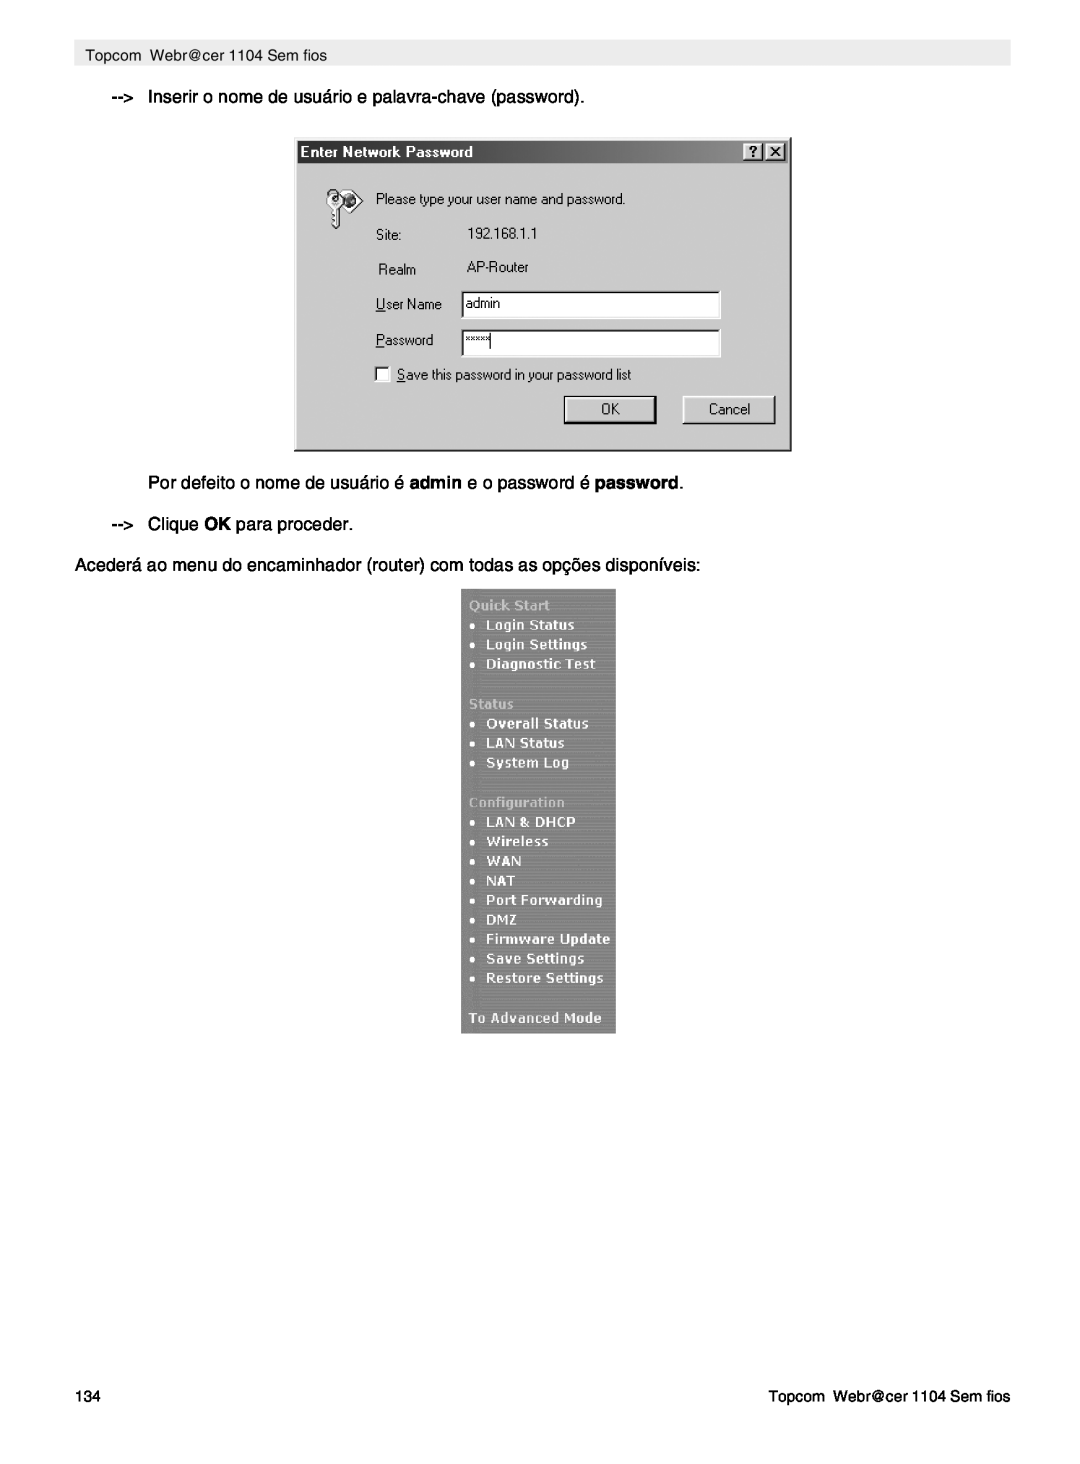 Topcom manual do utilizador Inserir o nome de usuário e palavra-chave password, Topcom Webr@cer 1104 Sem fios 